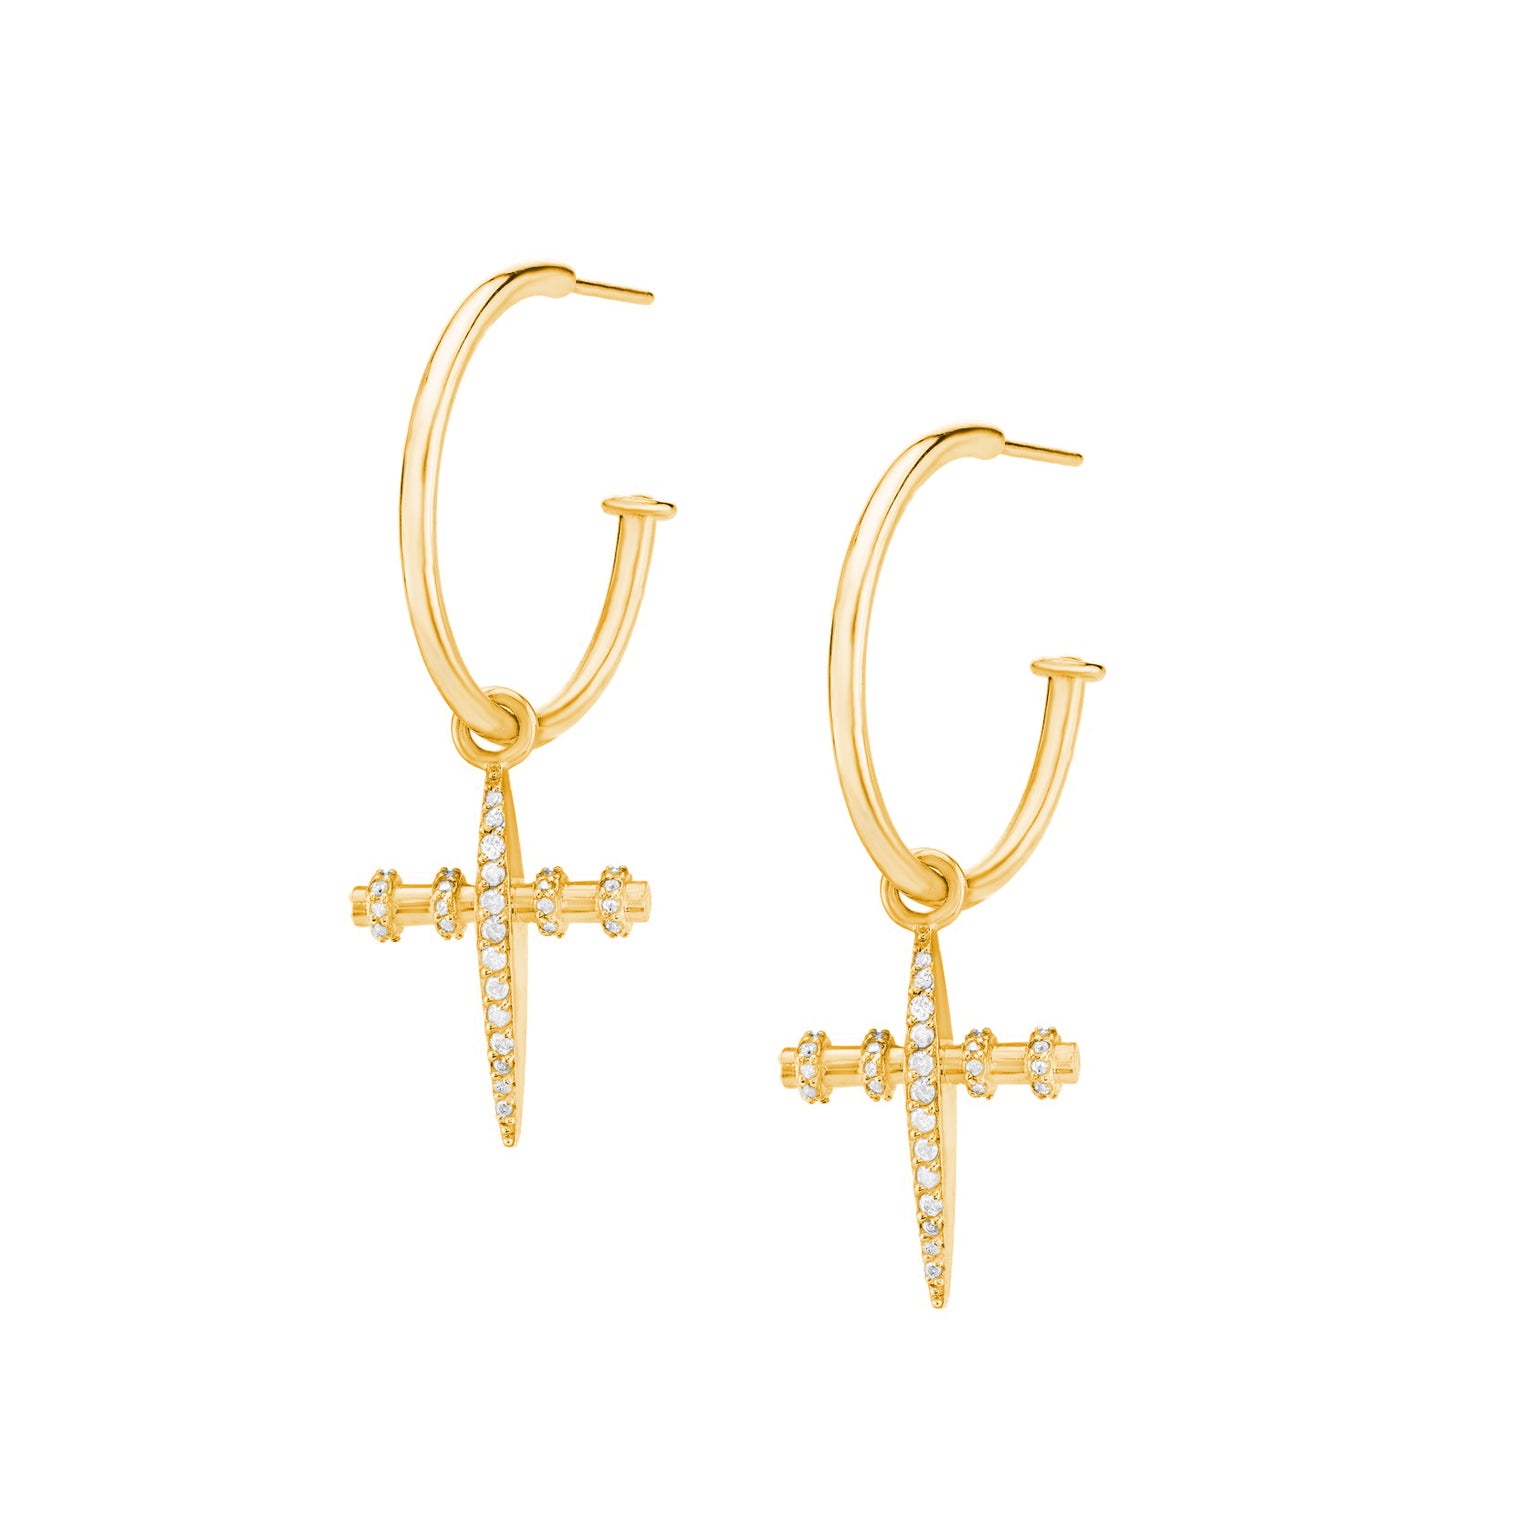 14K Gold Gear Cross Hoop Earrings with Pavé Diamonds | Sheryl Lowe